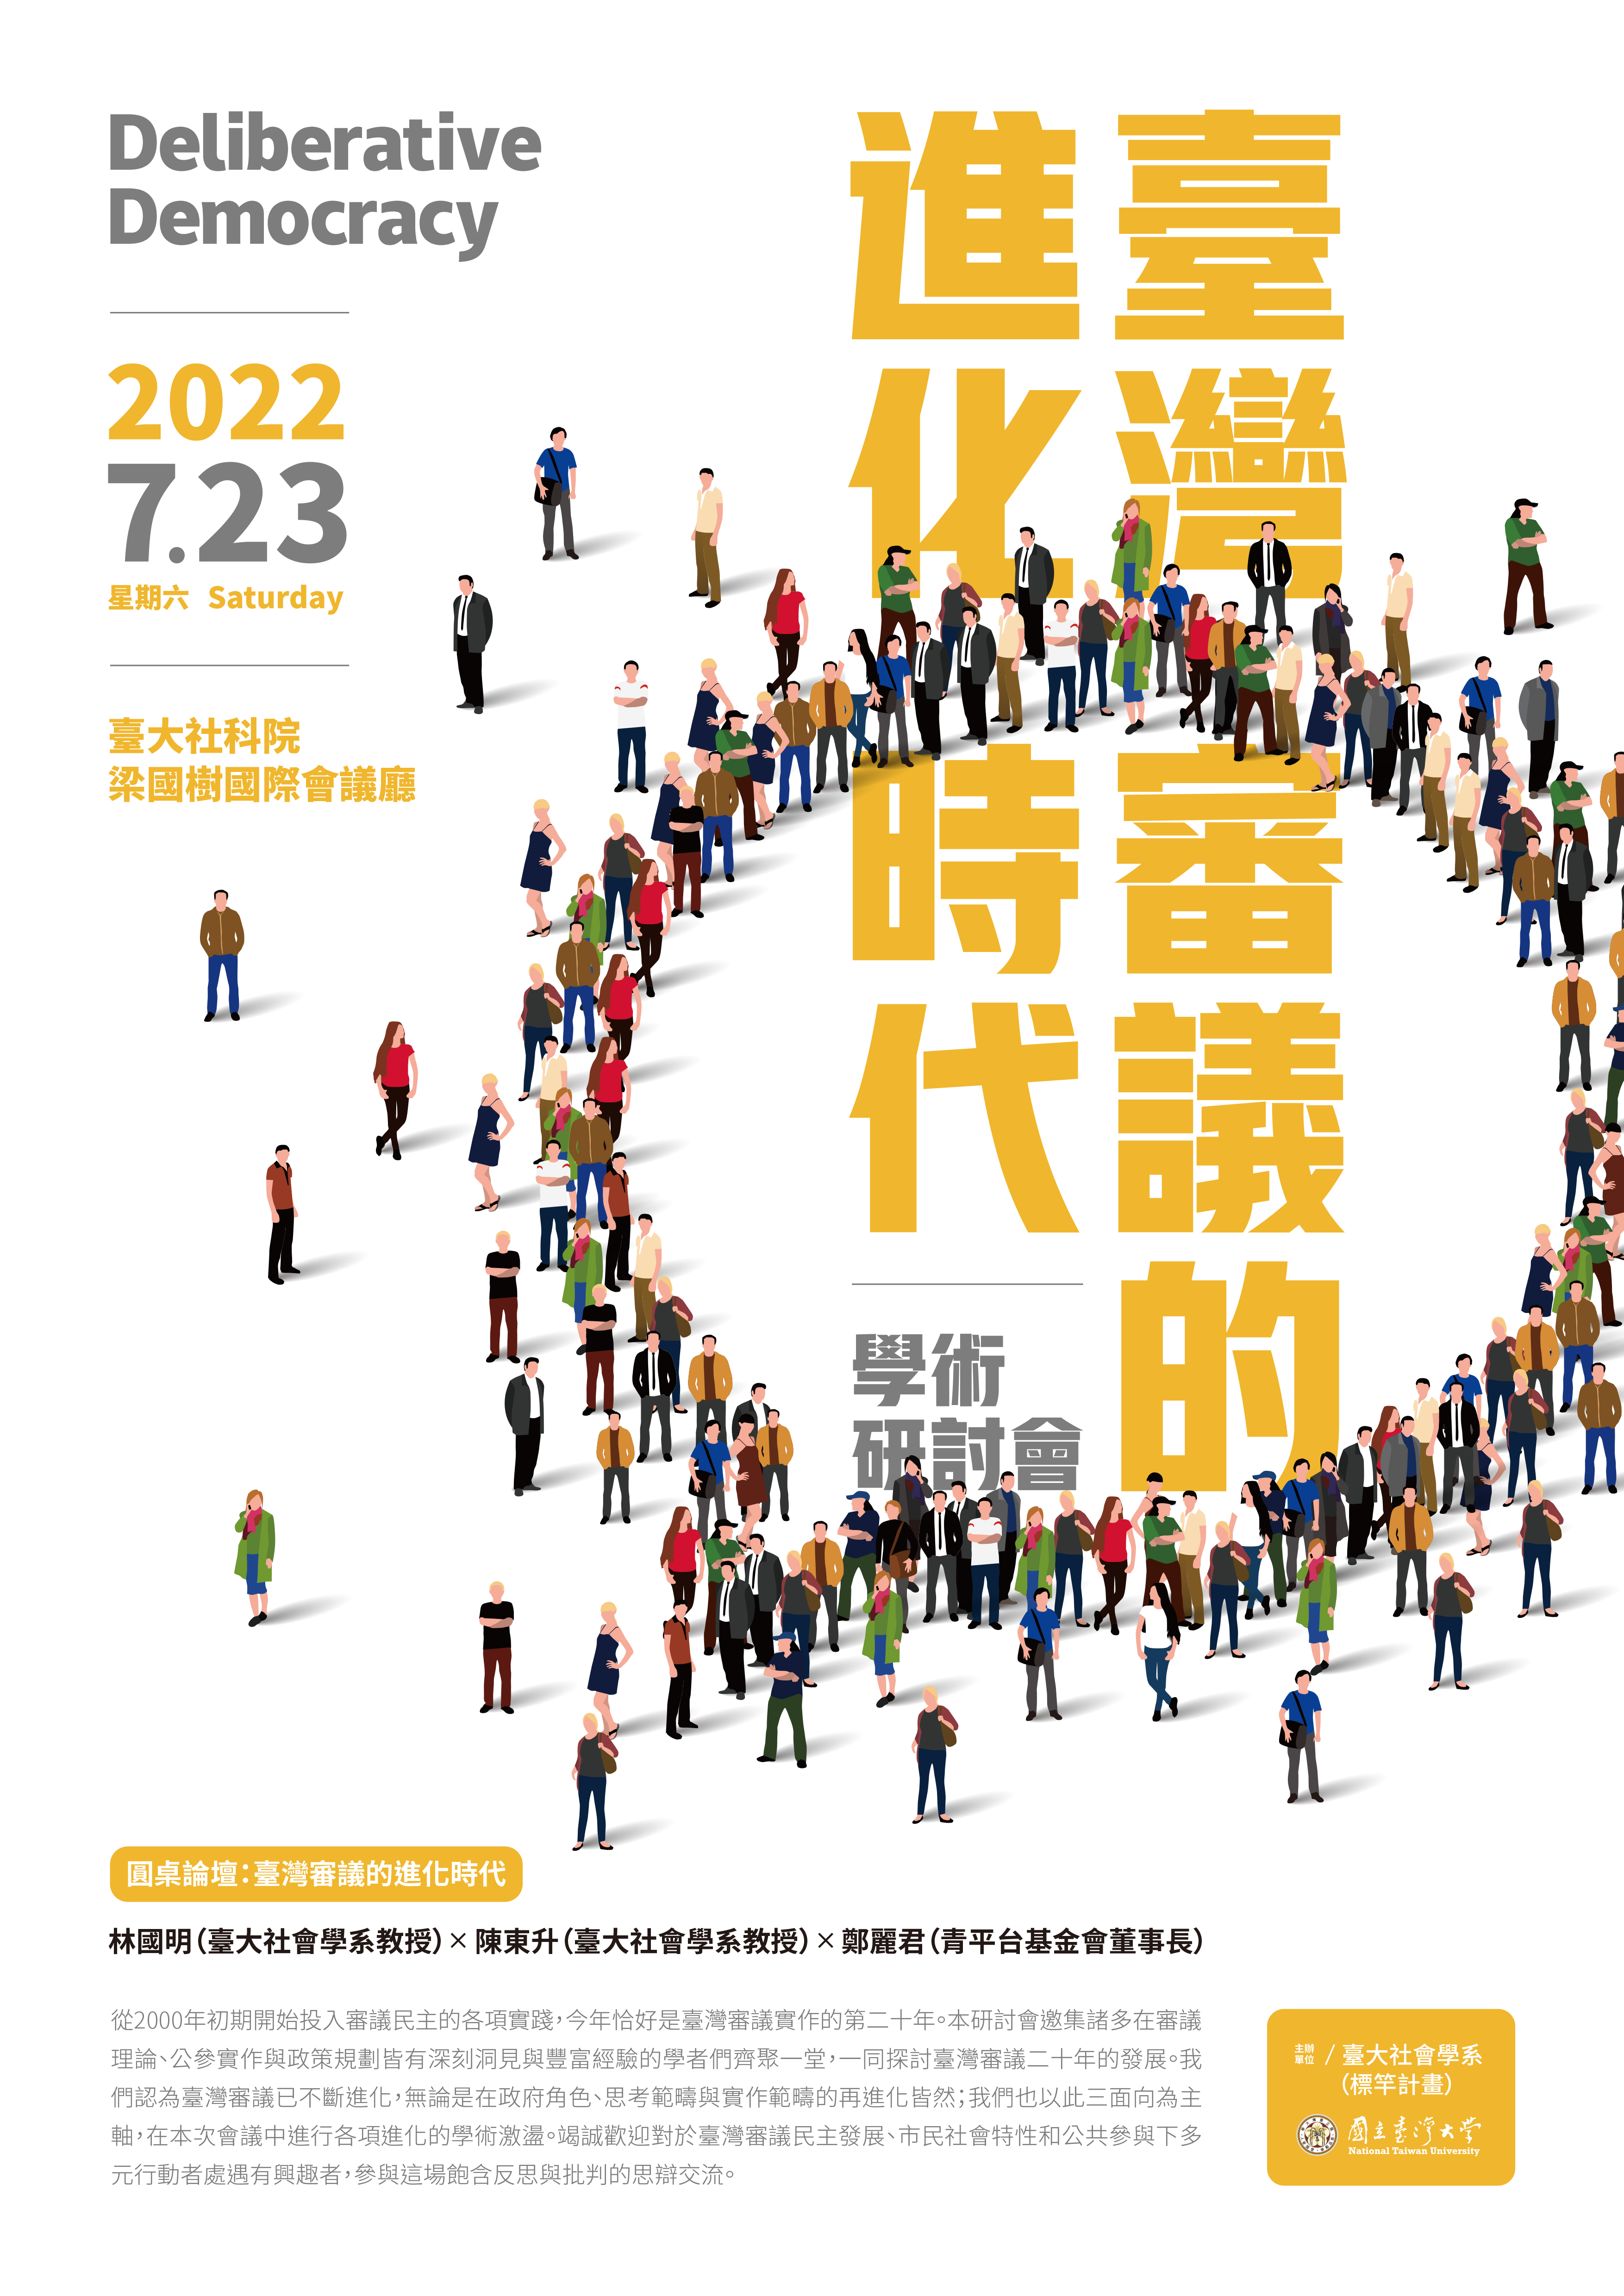 【活動資訊】2022.07.23臺大社會學系「臺灣審議的進化時代」研討會